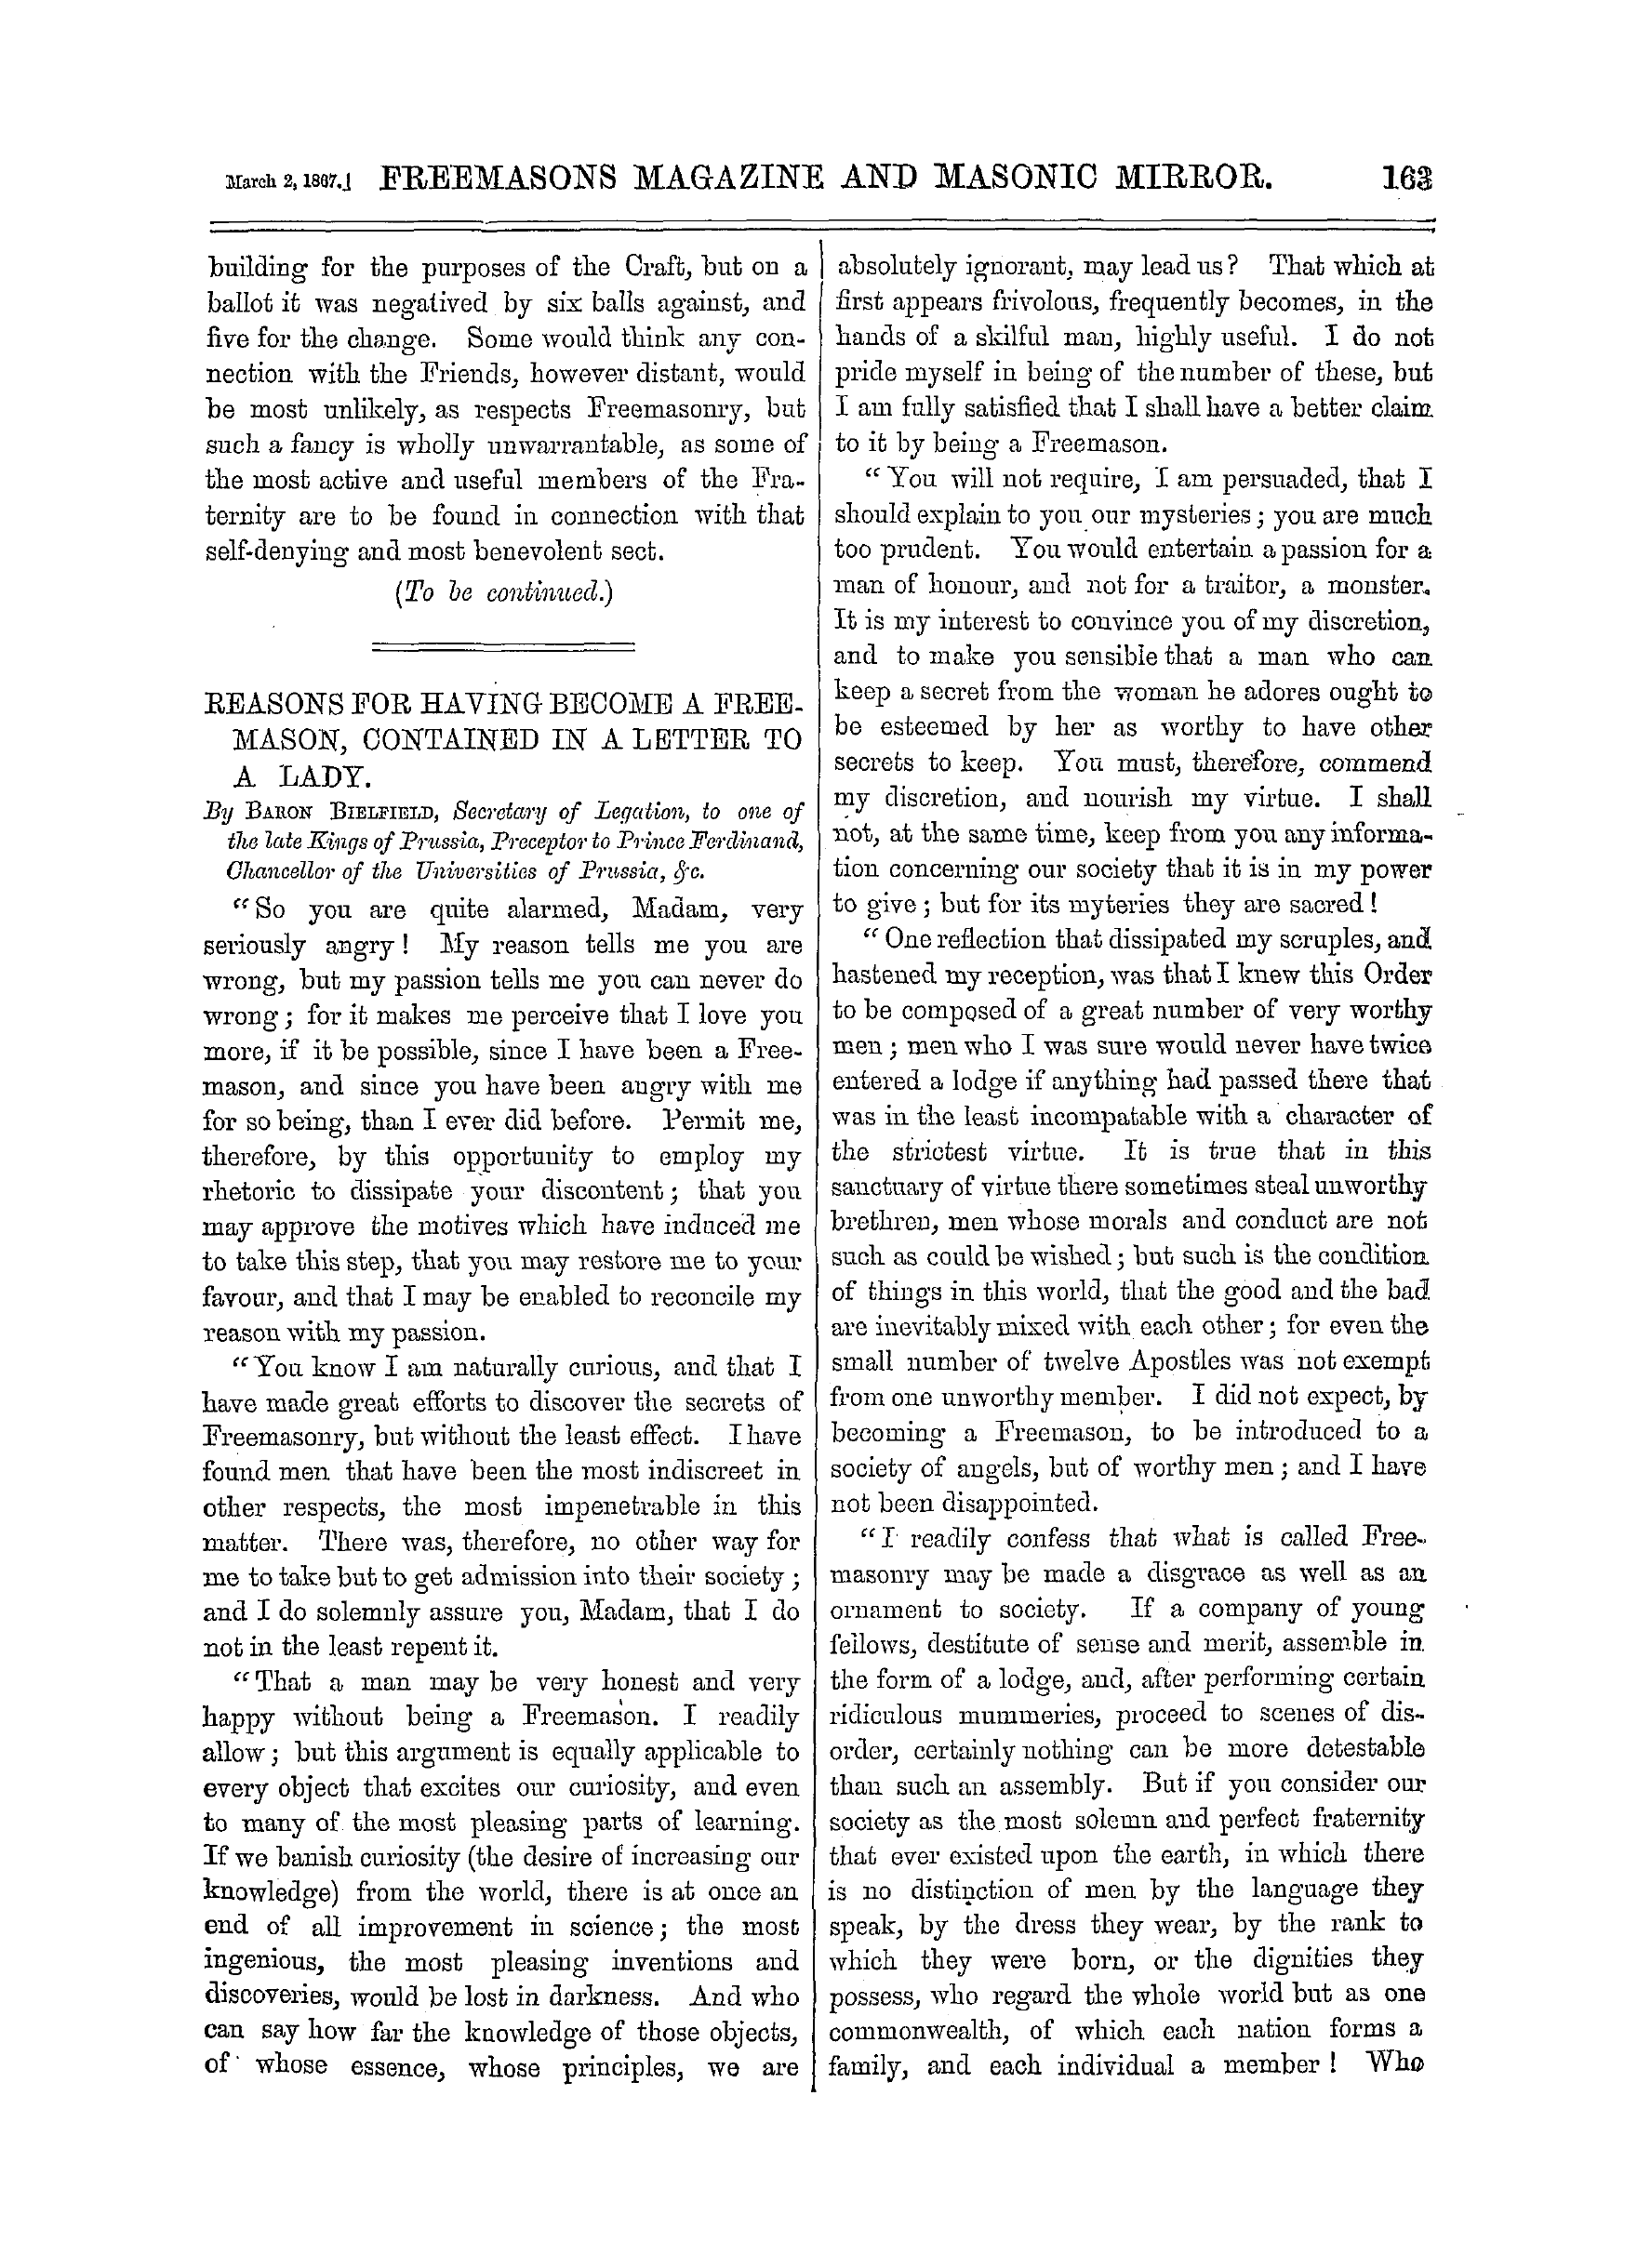 The Freemasons' Monthly Magazine: 1867-03-02: 3